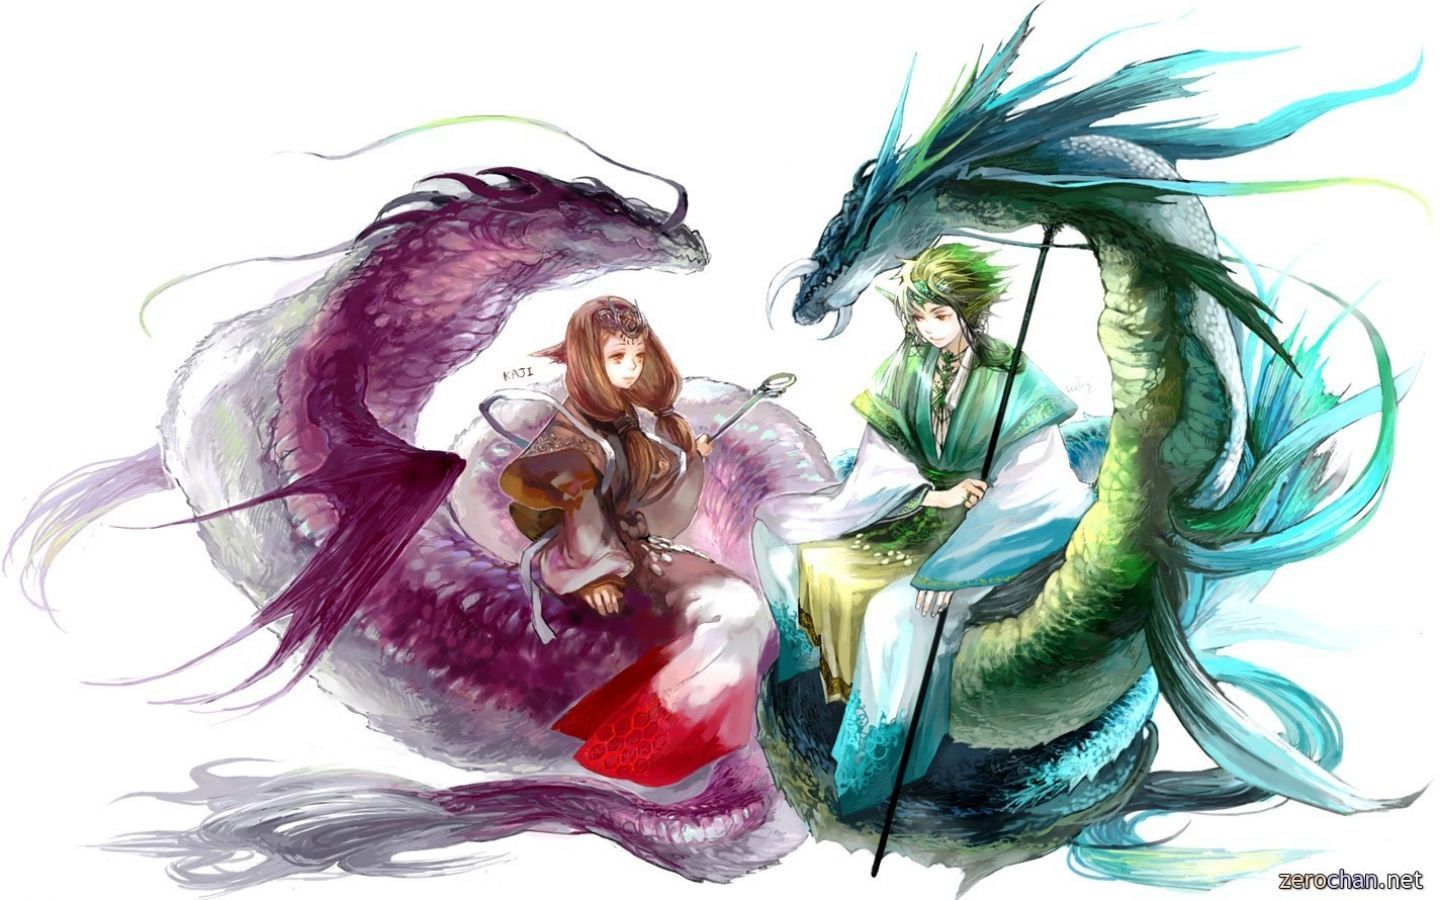 Anime dragon art couple. Anime wallpaper, HD anime wallpaper, Sky anime